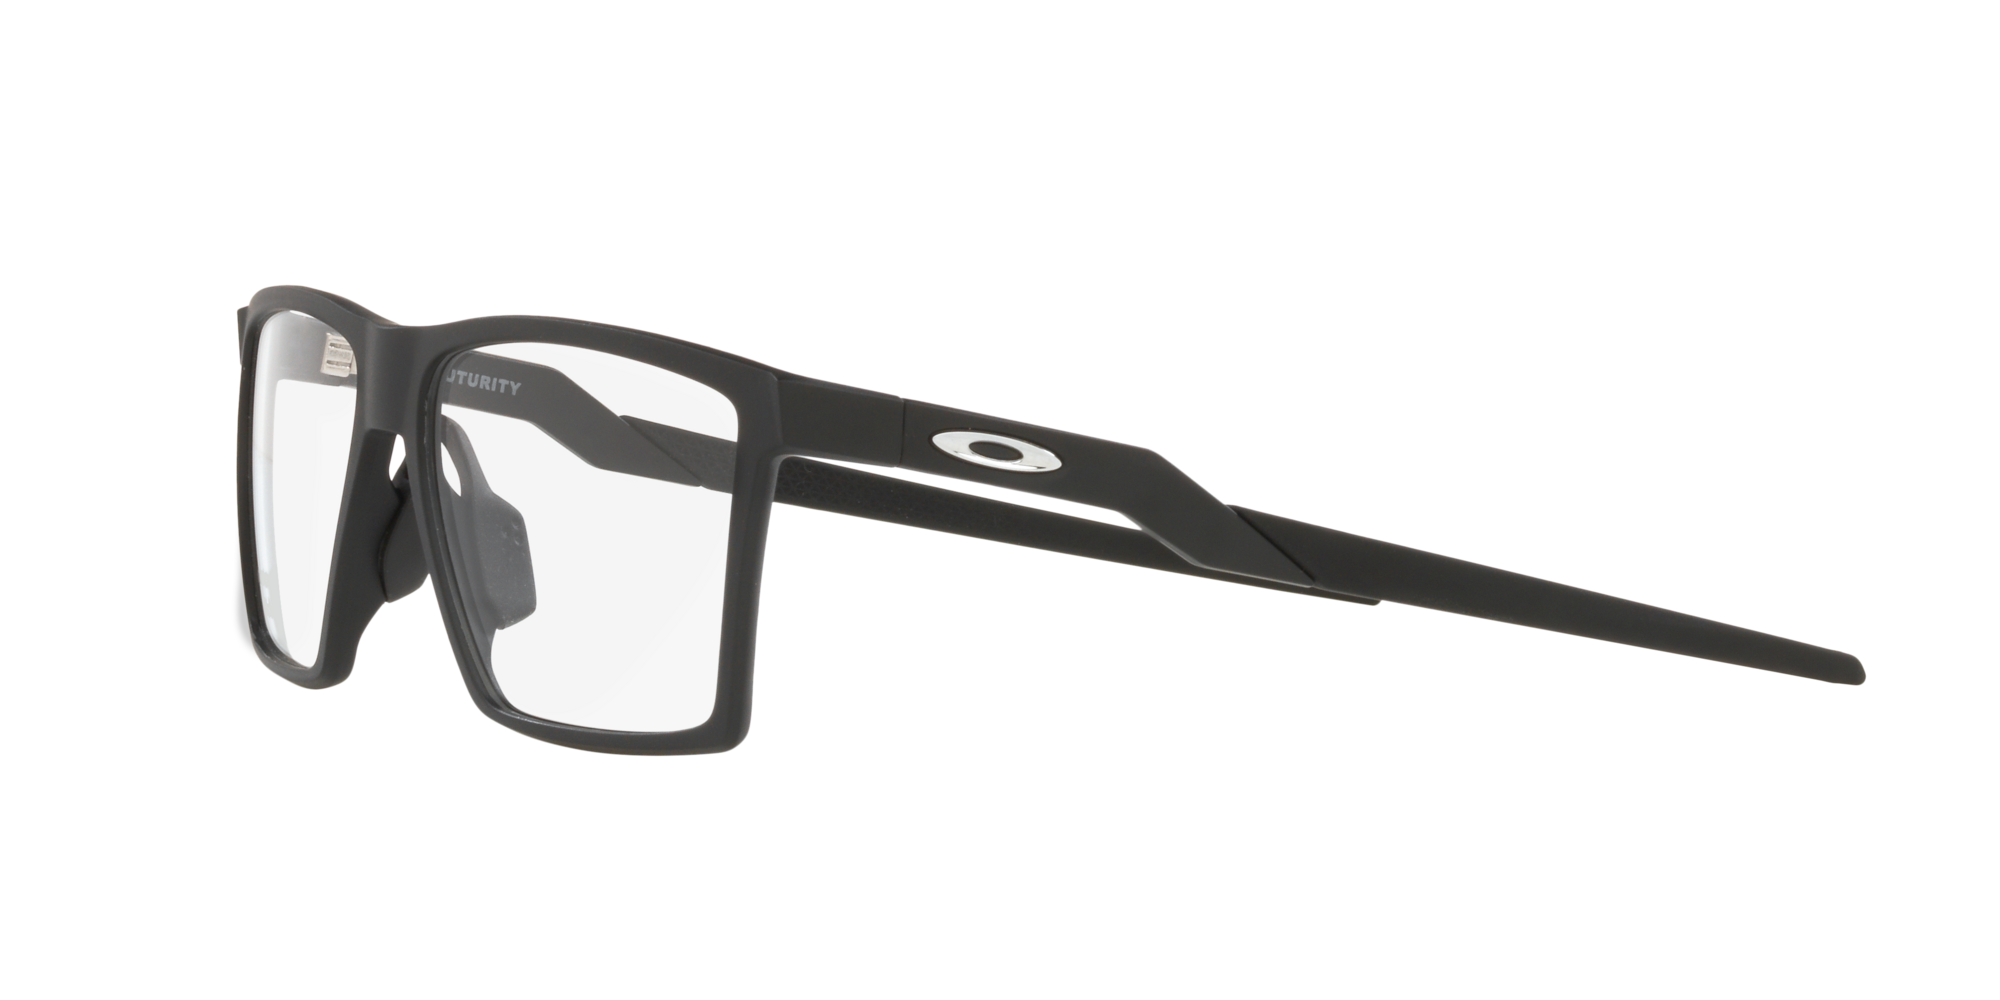 Das Bild zeigt die Korrektionsbrille OX8061 806101 von der Marke Oakley  in  schwarz satiniert.